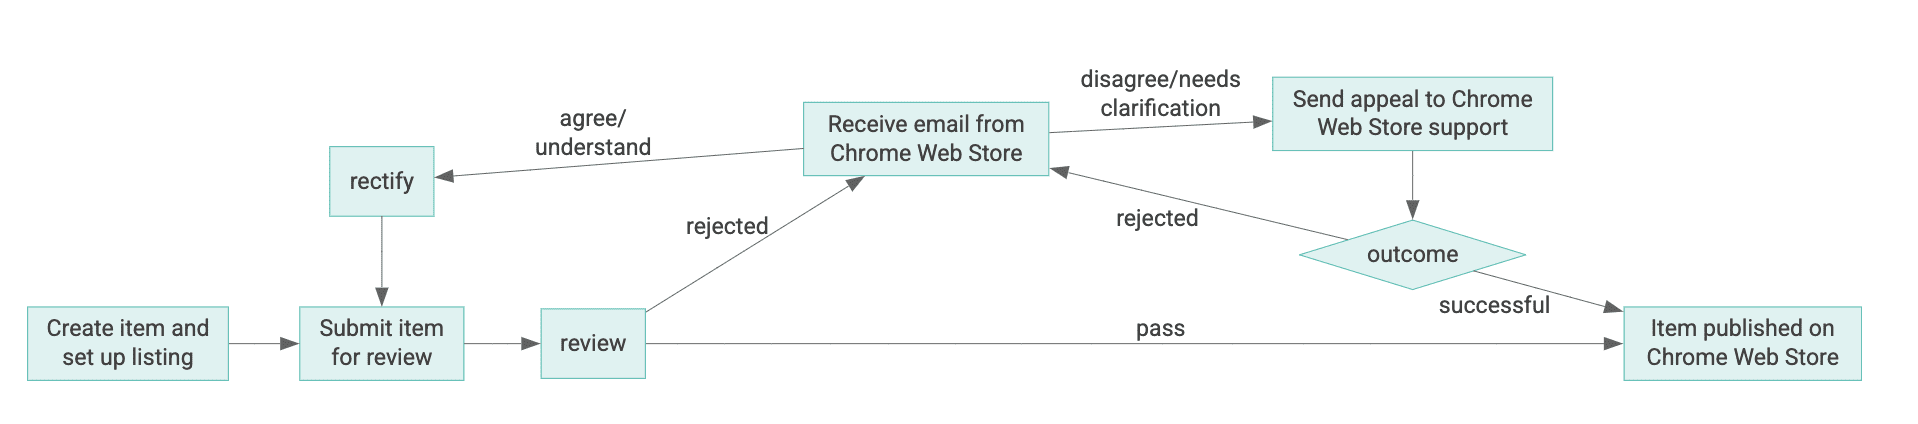 Diagramma del ciclo di vita di un articolo del Chrome Web Store